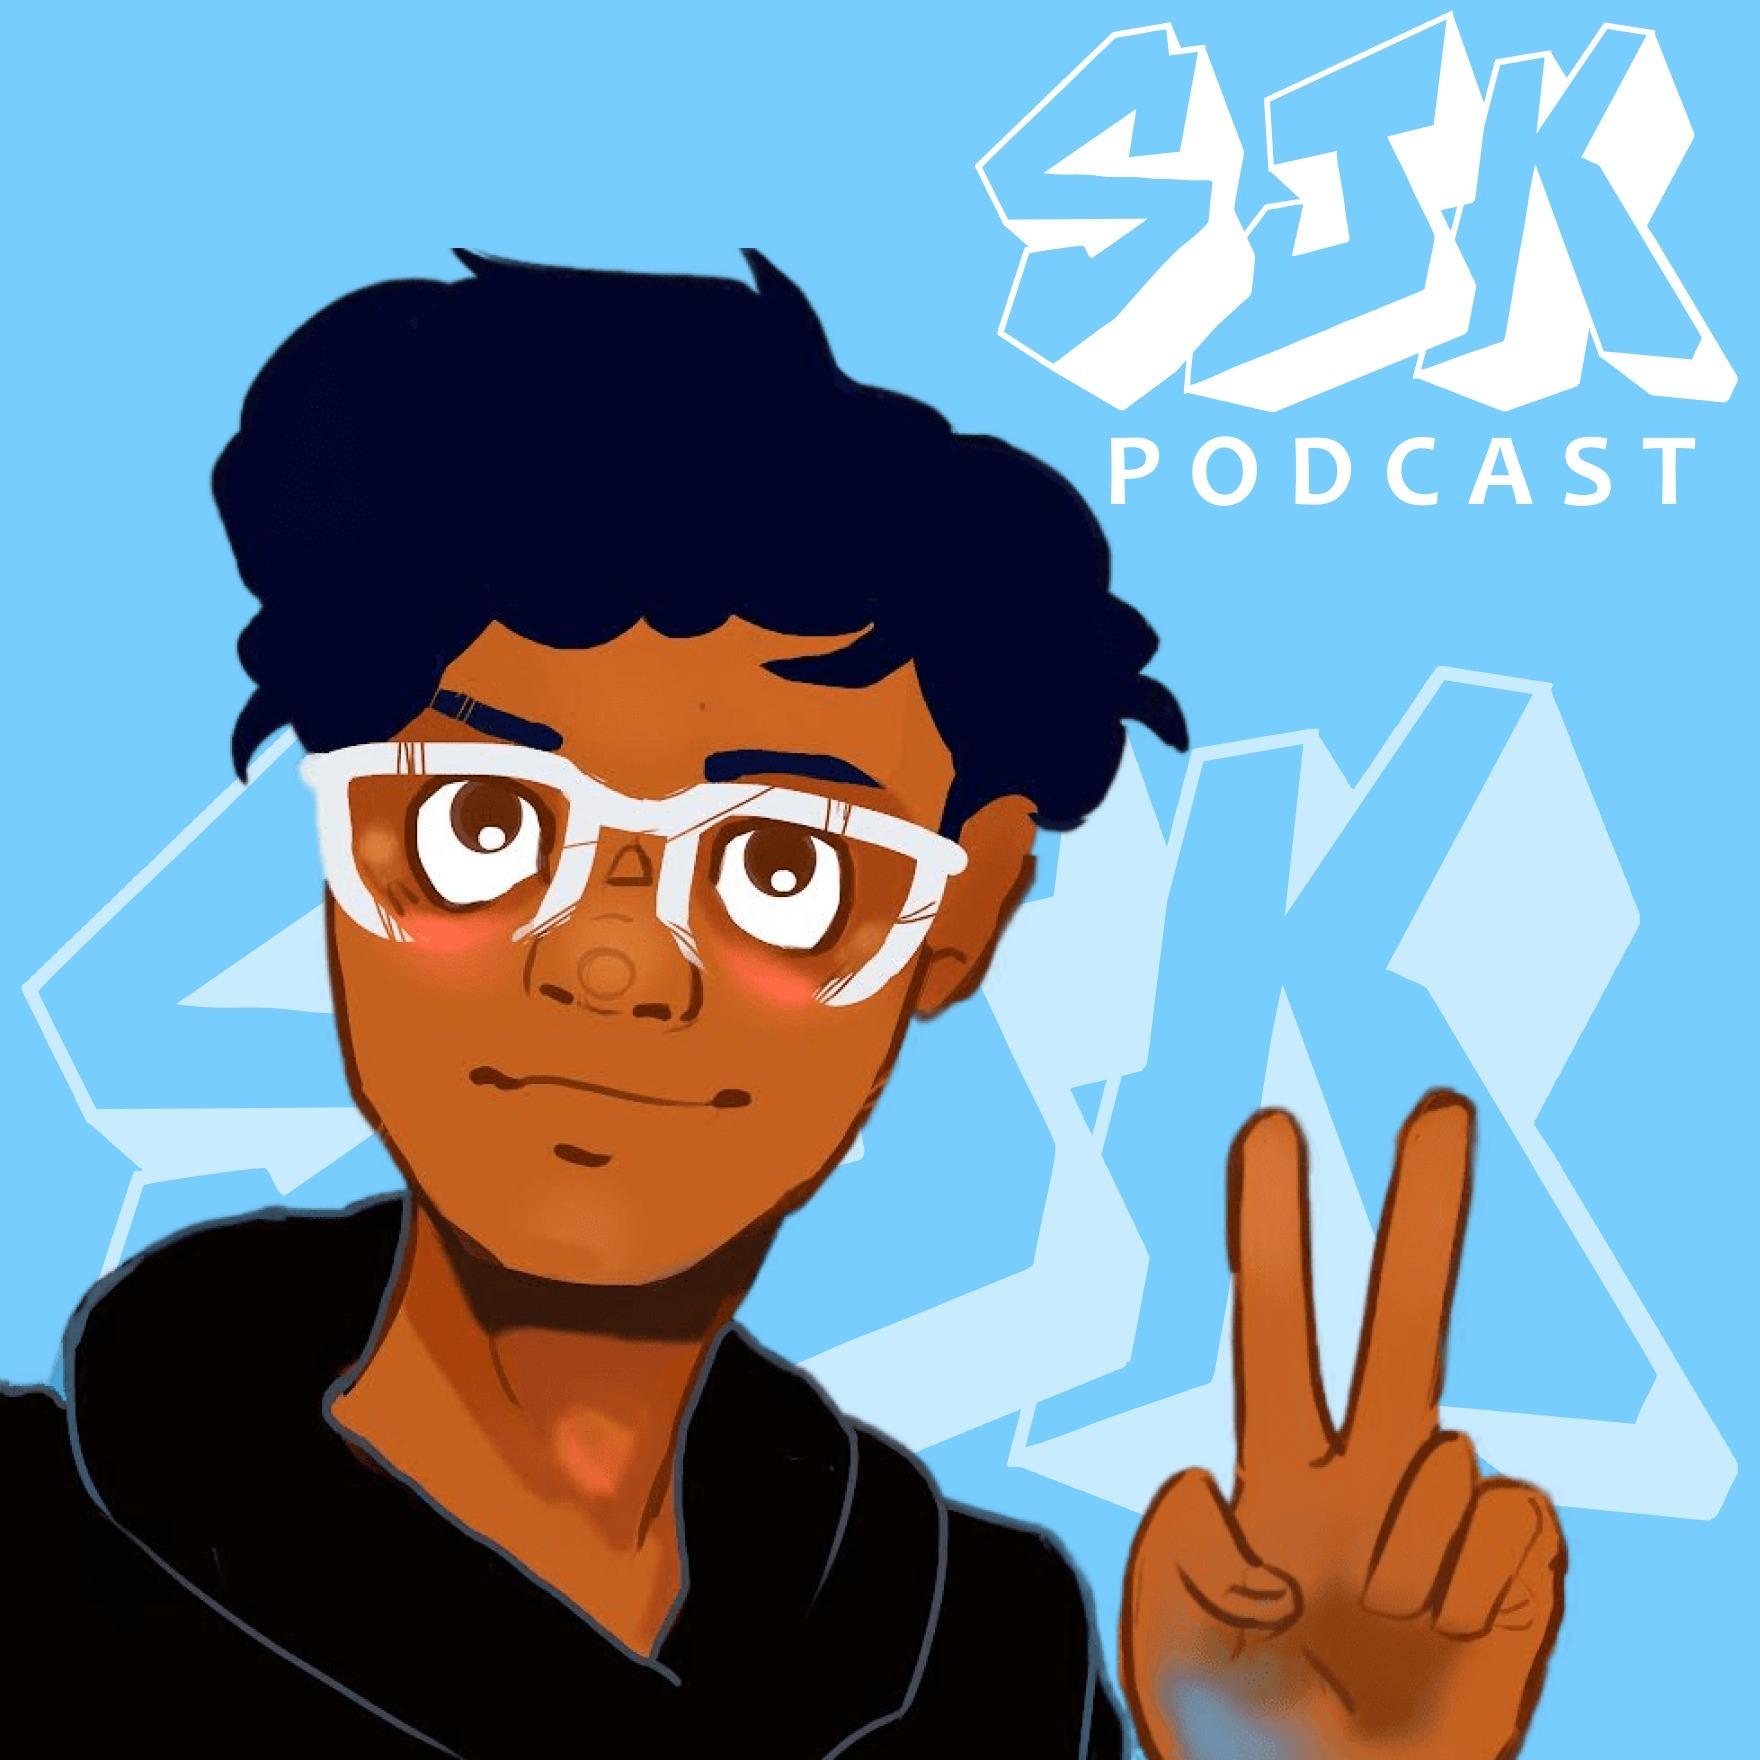 The SJK Podcast